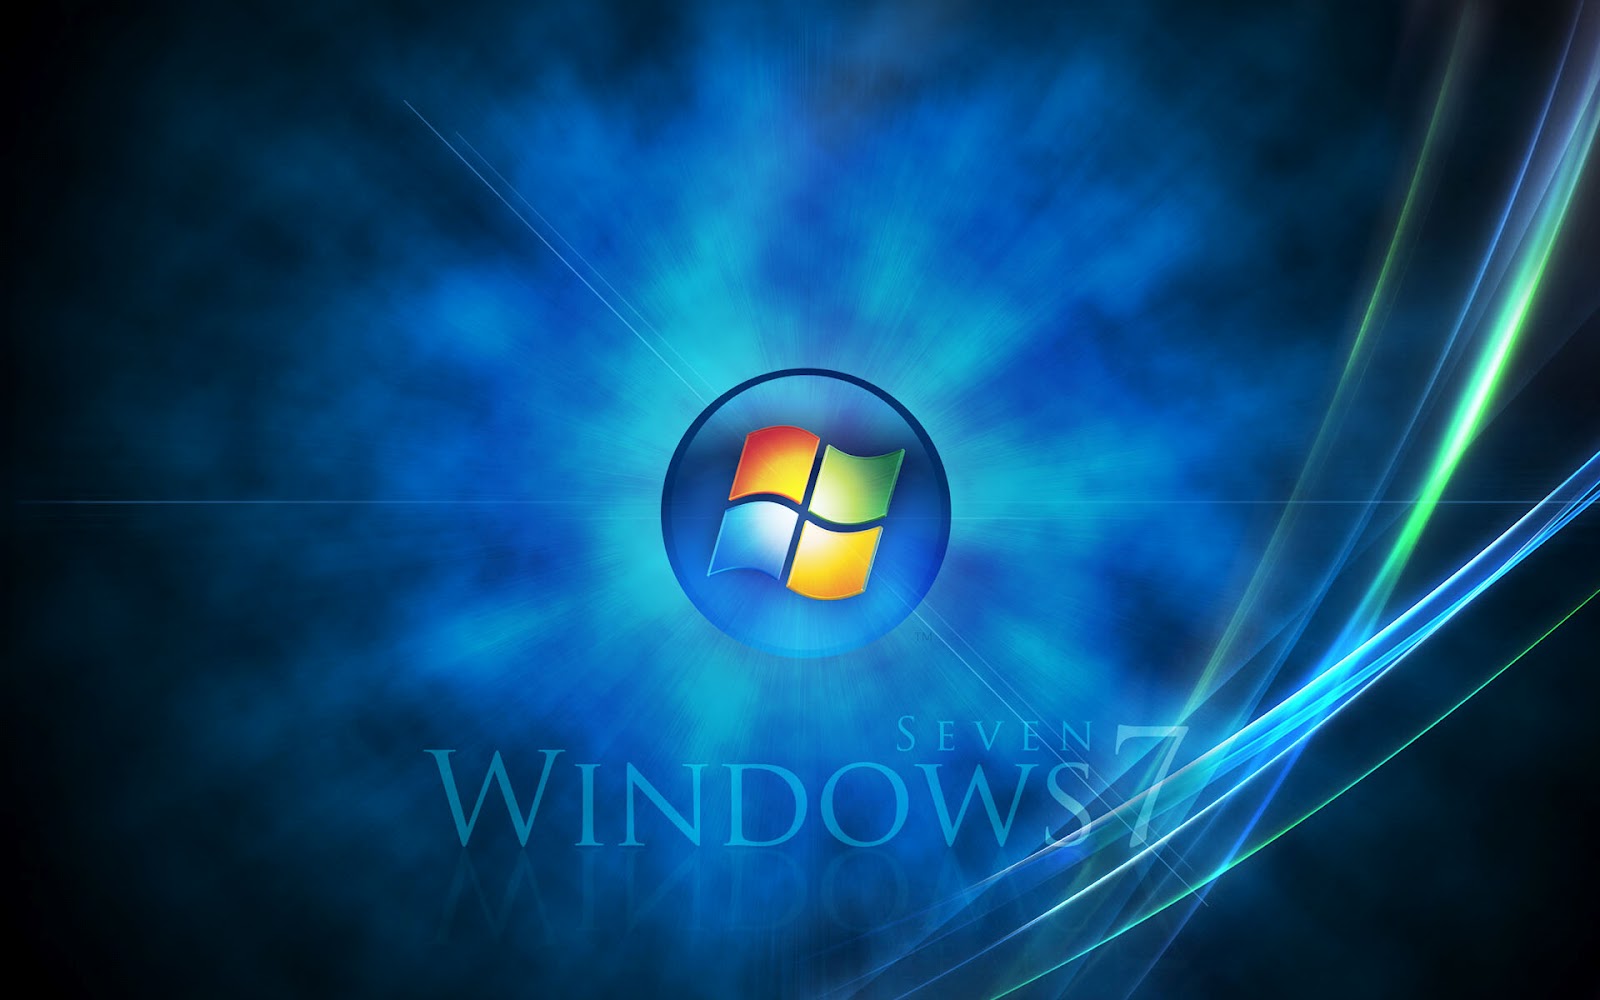 Windows Desktop Background For